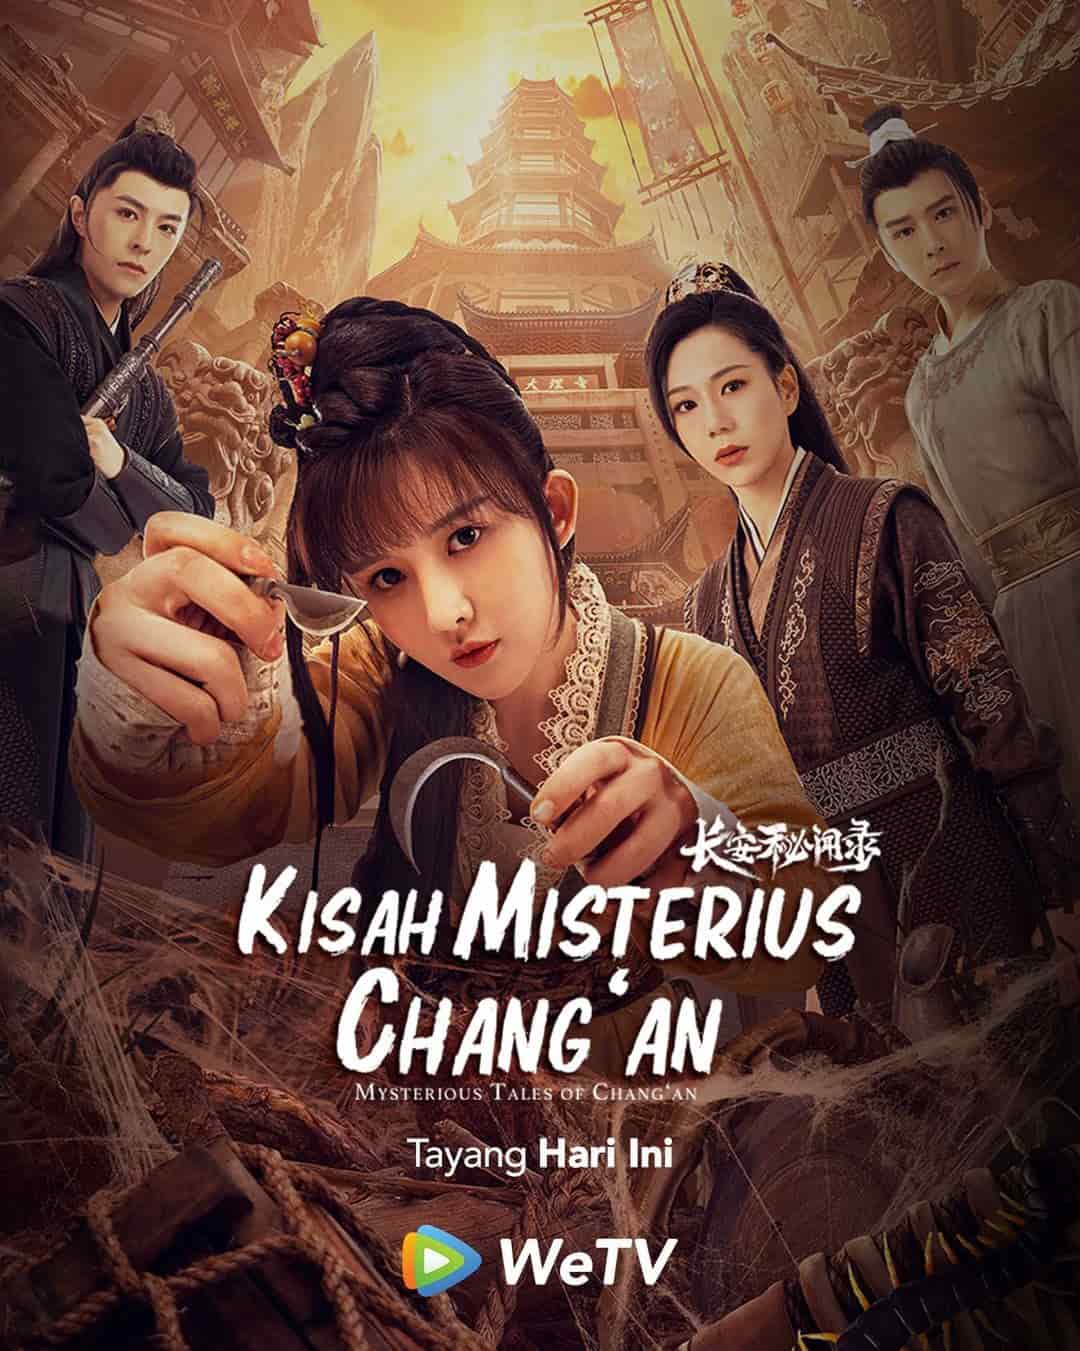 ดูซีรีย์ Mysterious Tales of Changan (2022) แฟ้มคดีลับฉางอัน 